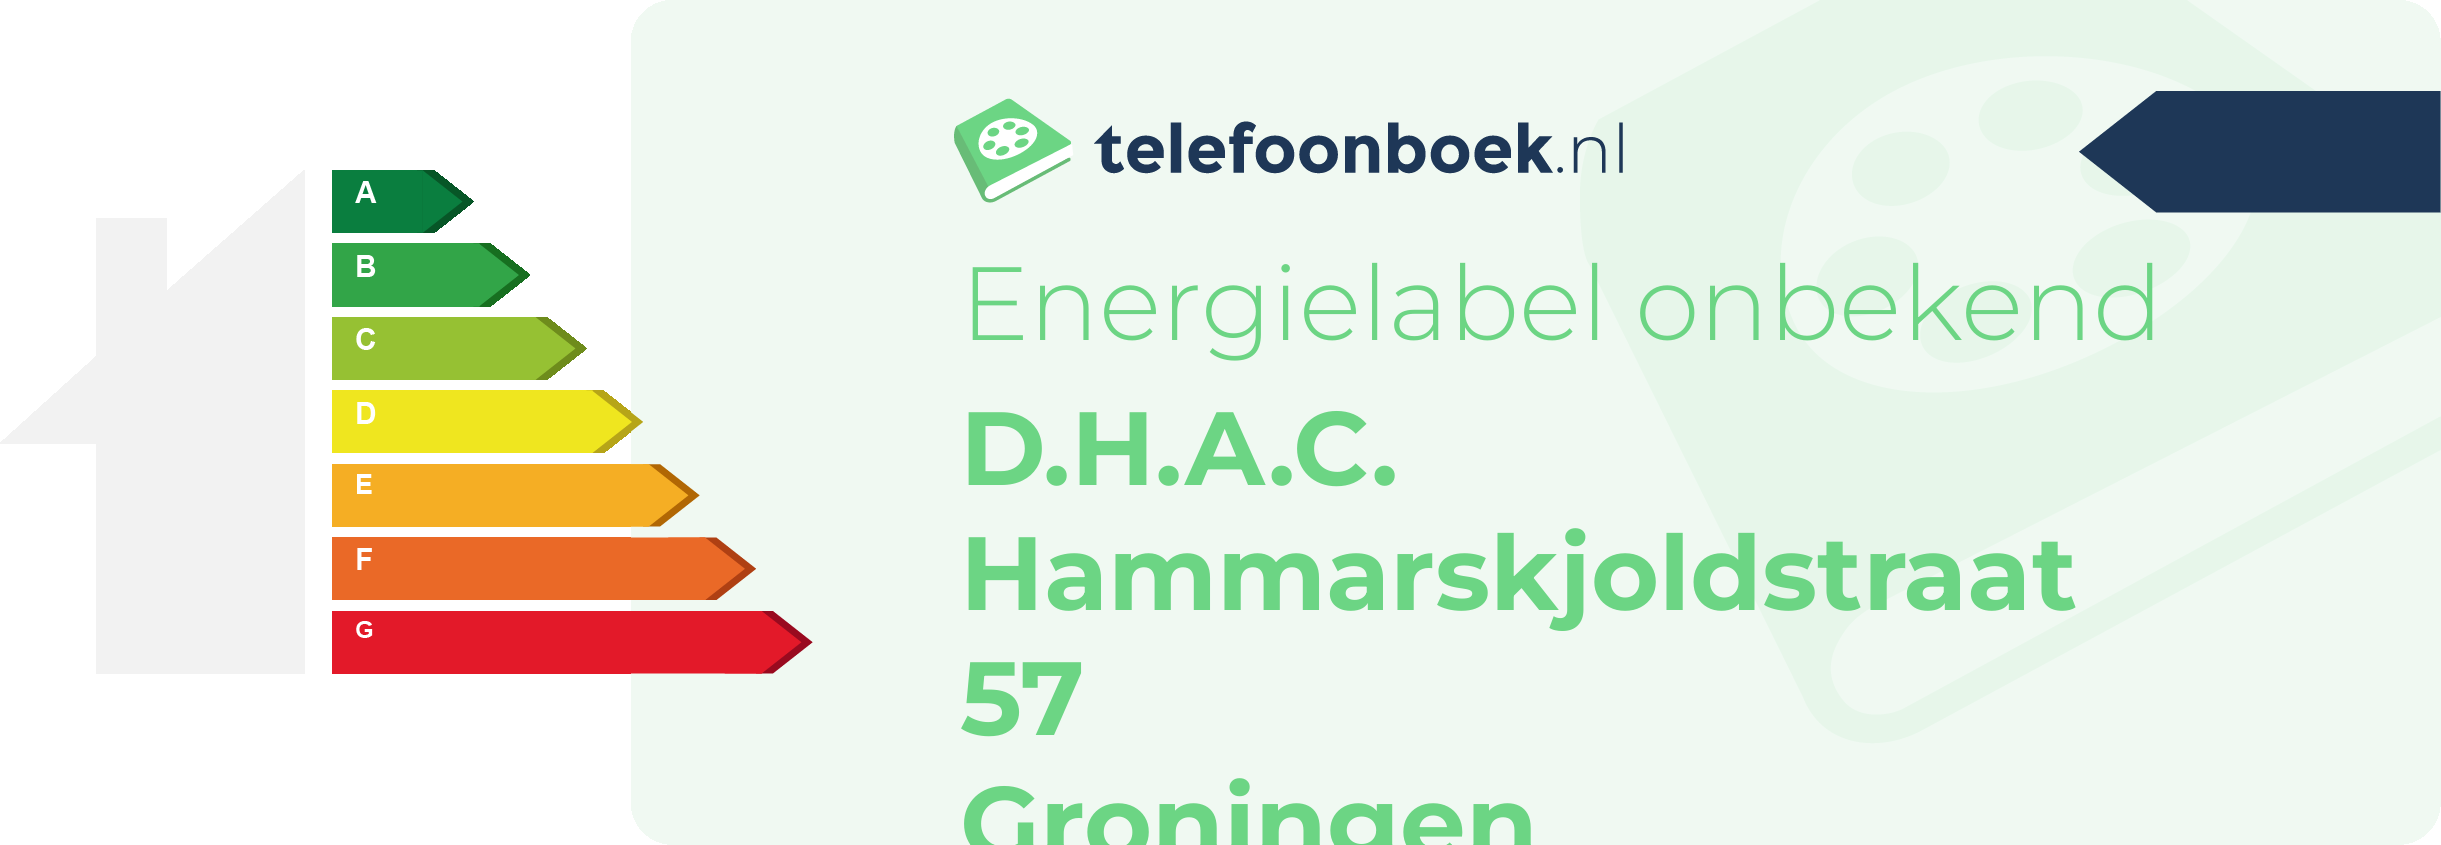 Energielabel D.H.A.C. Hammarskjoldstraat 57 Groningen